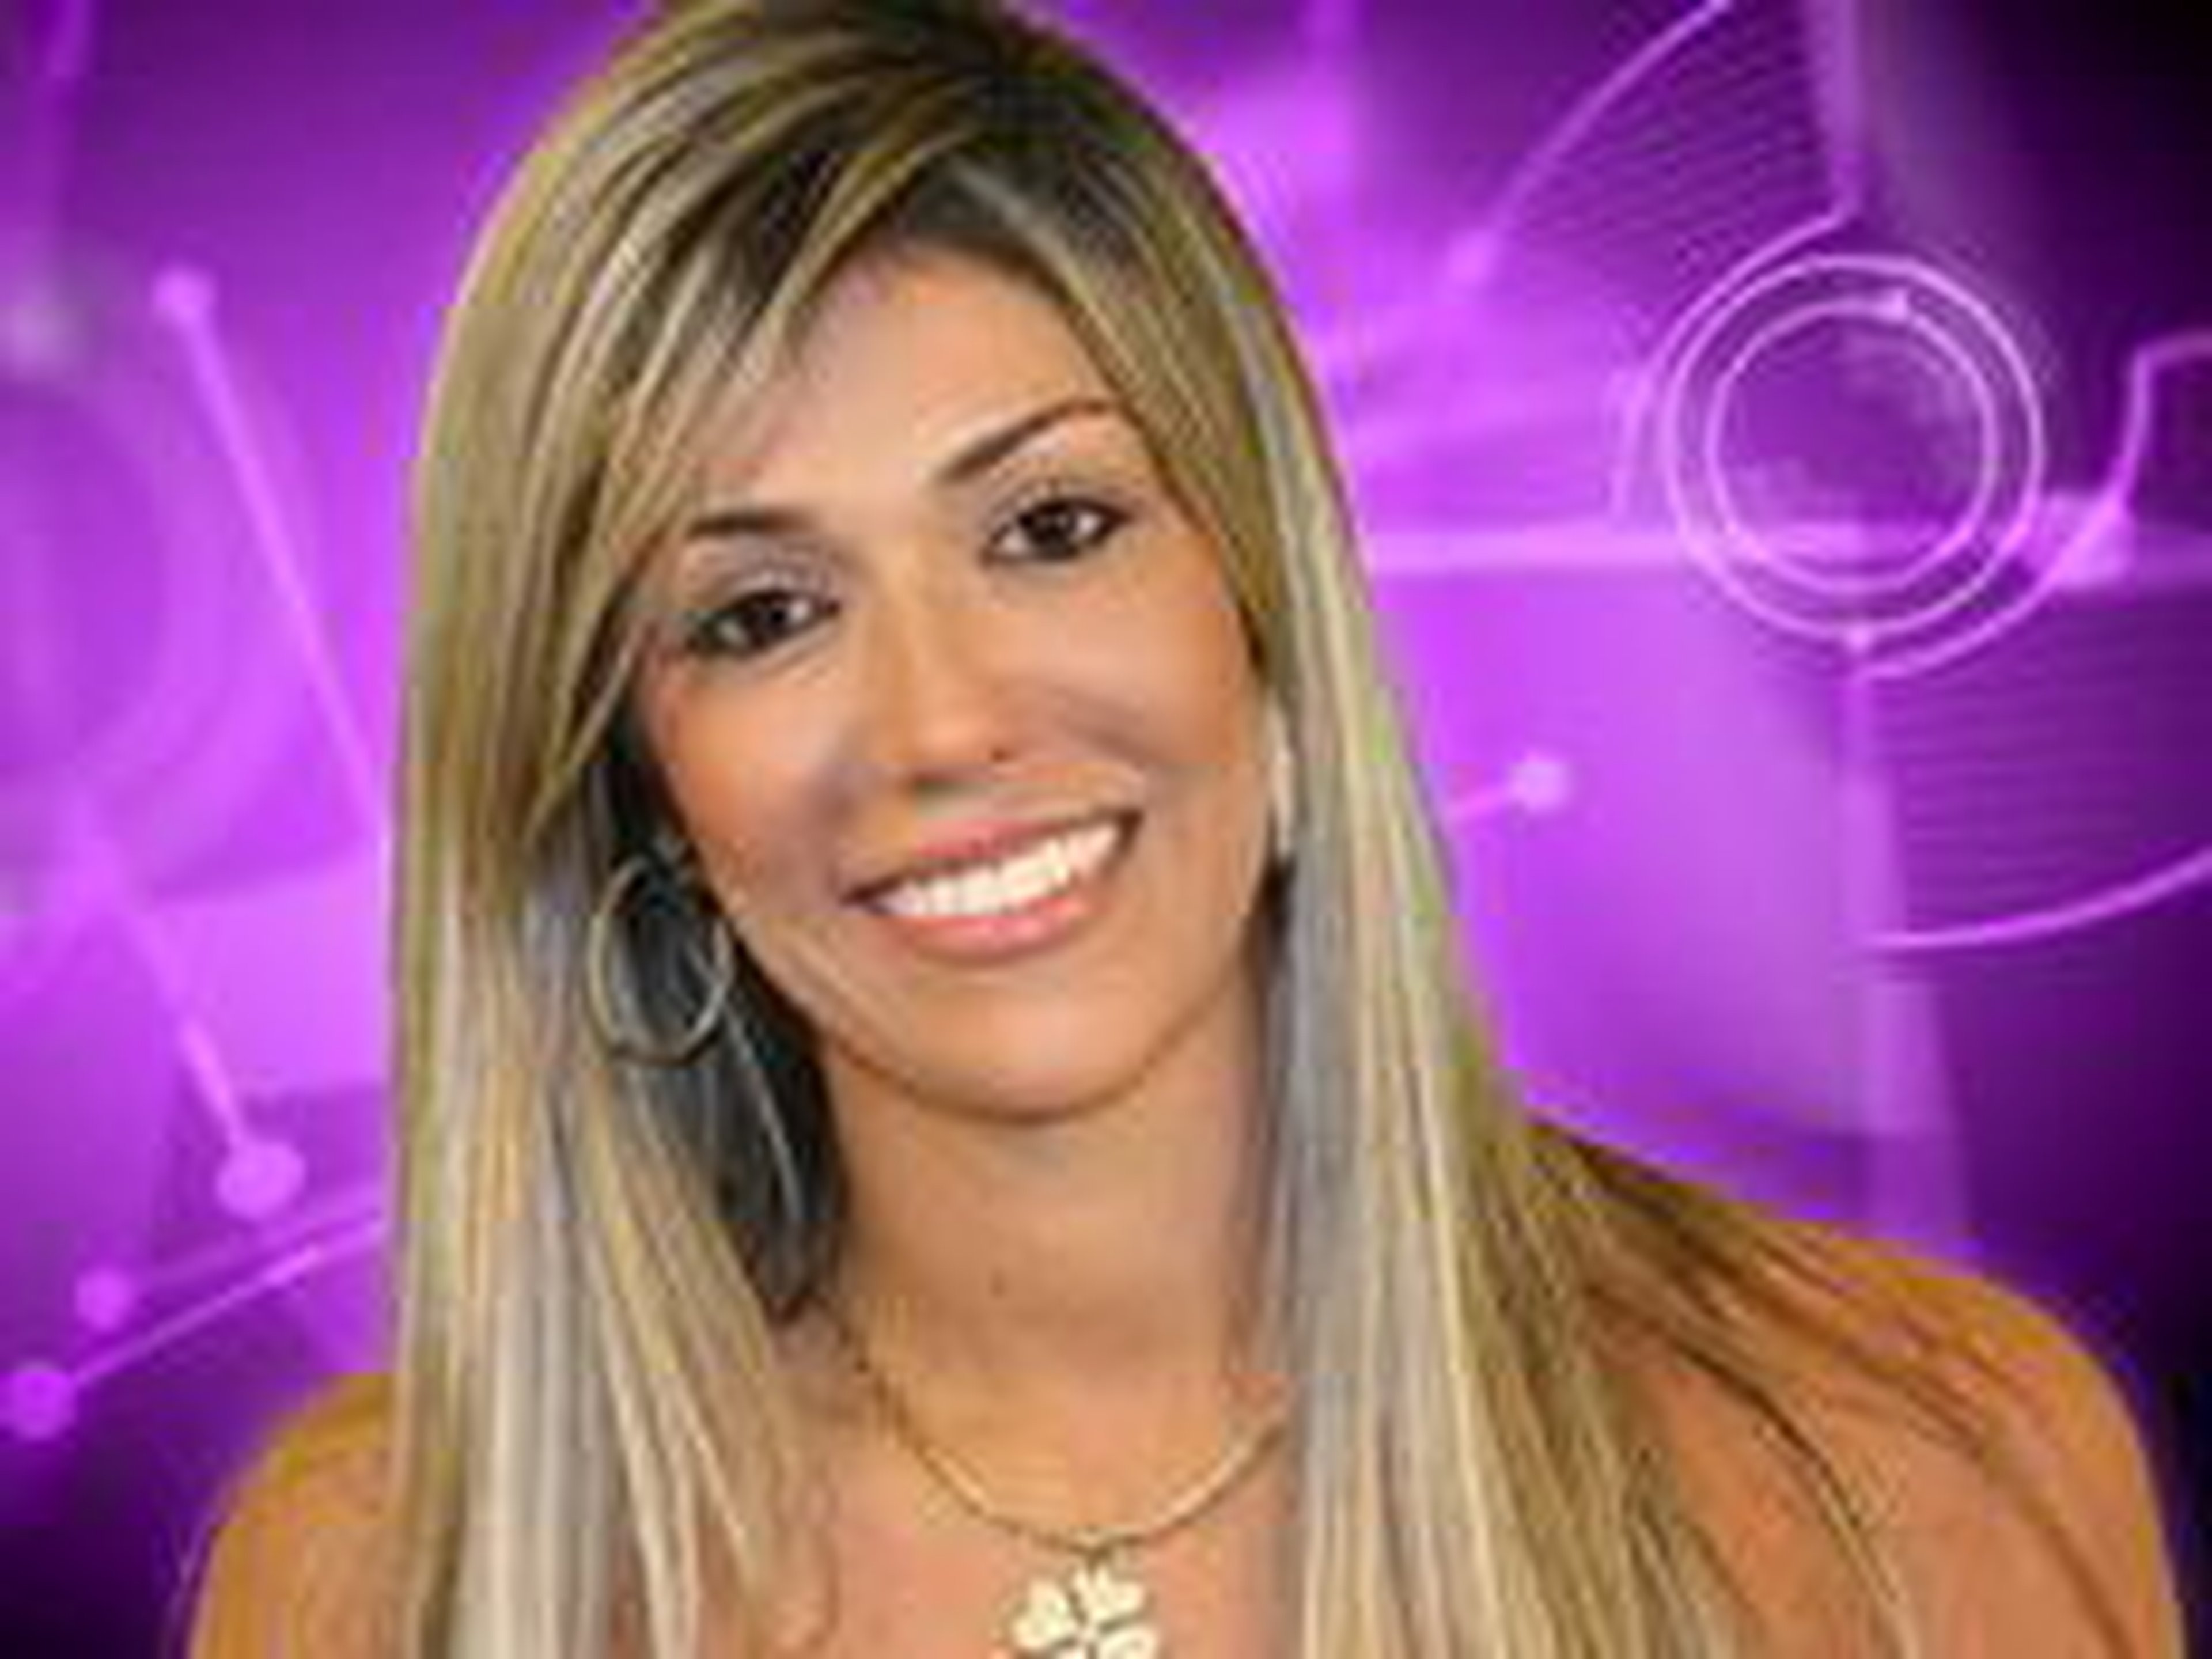 TV Globo/Divulgação